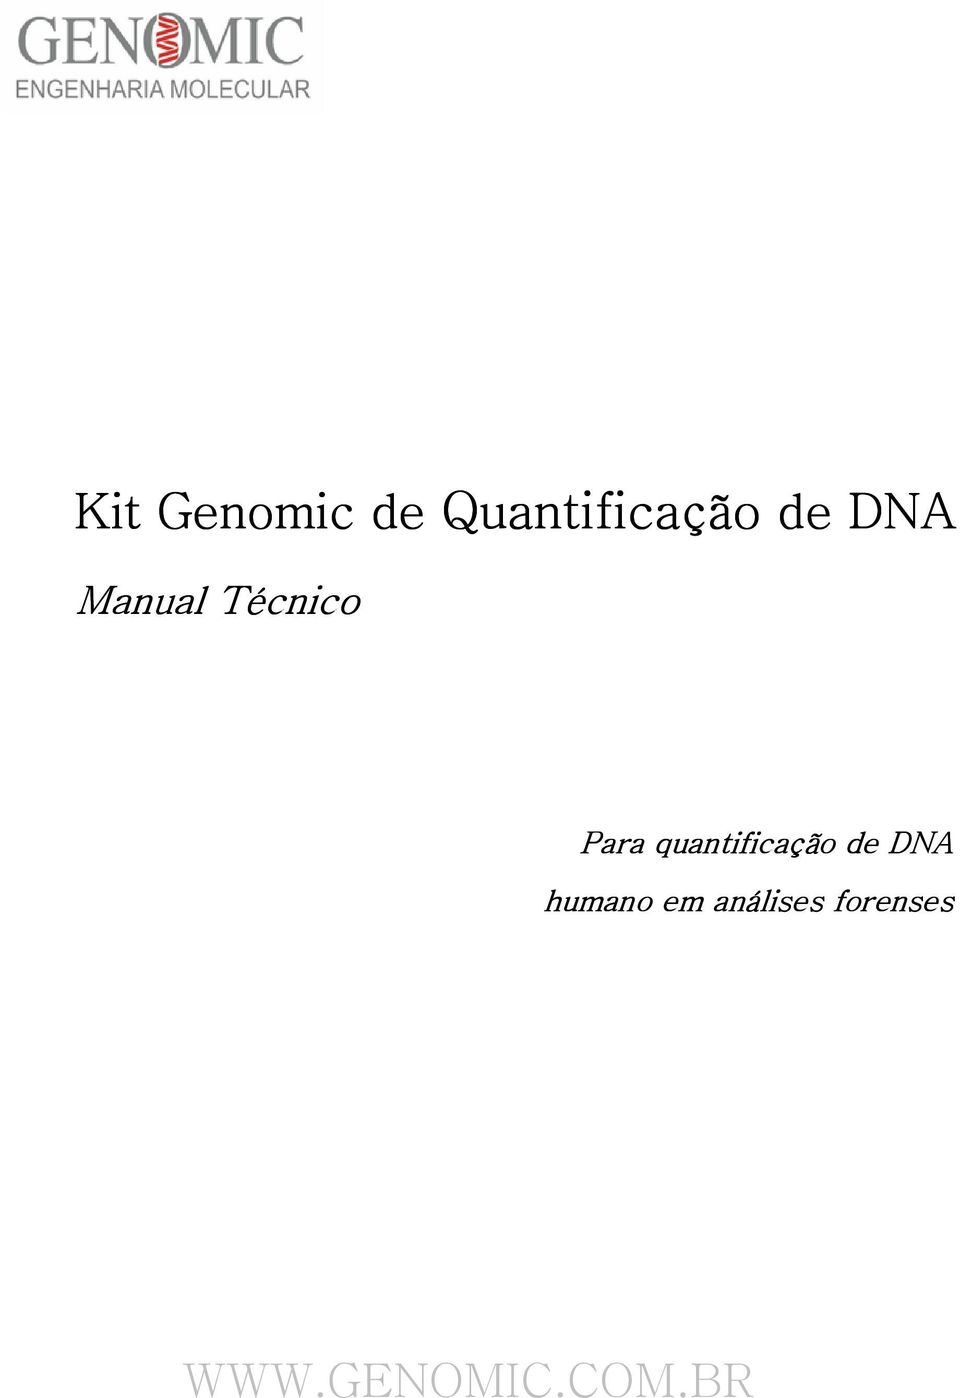 quantificação de DNA humano em